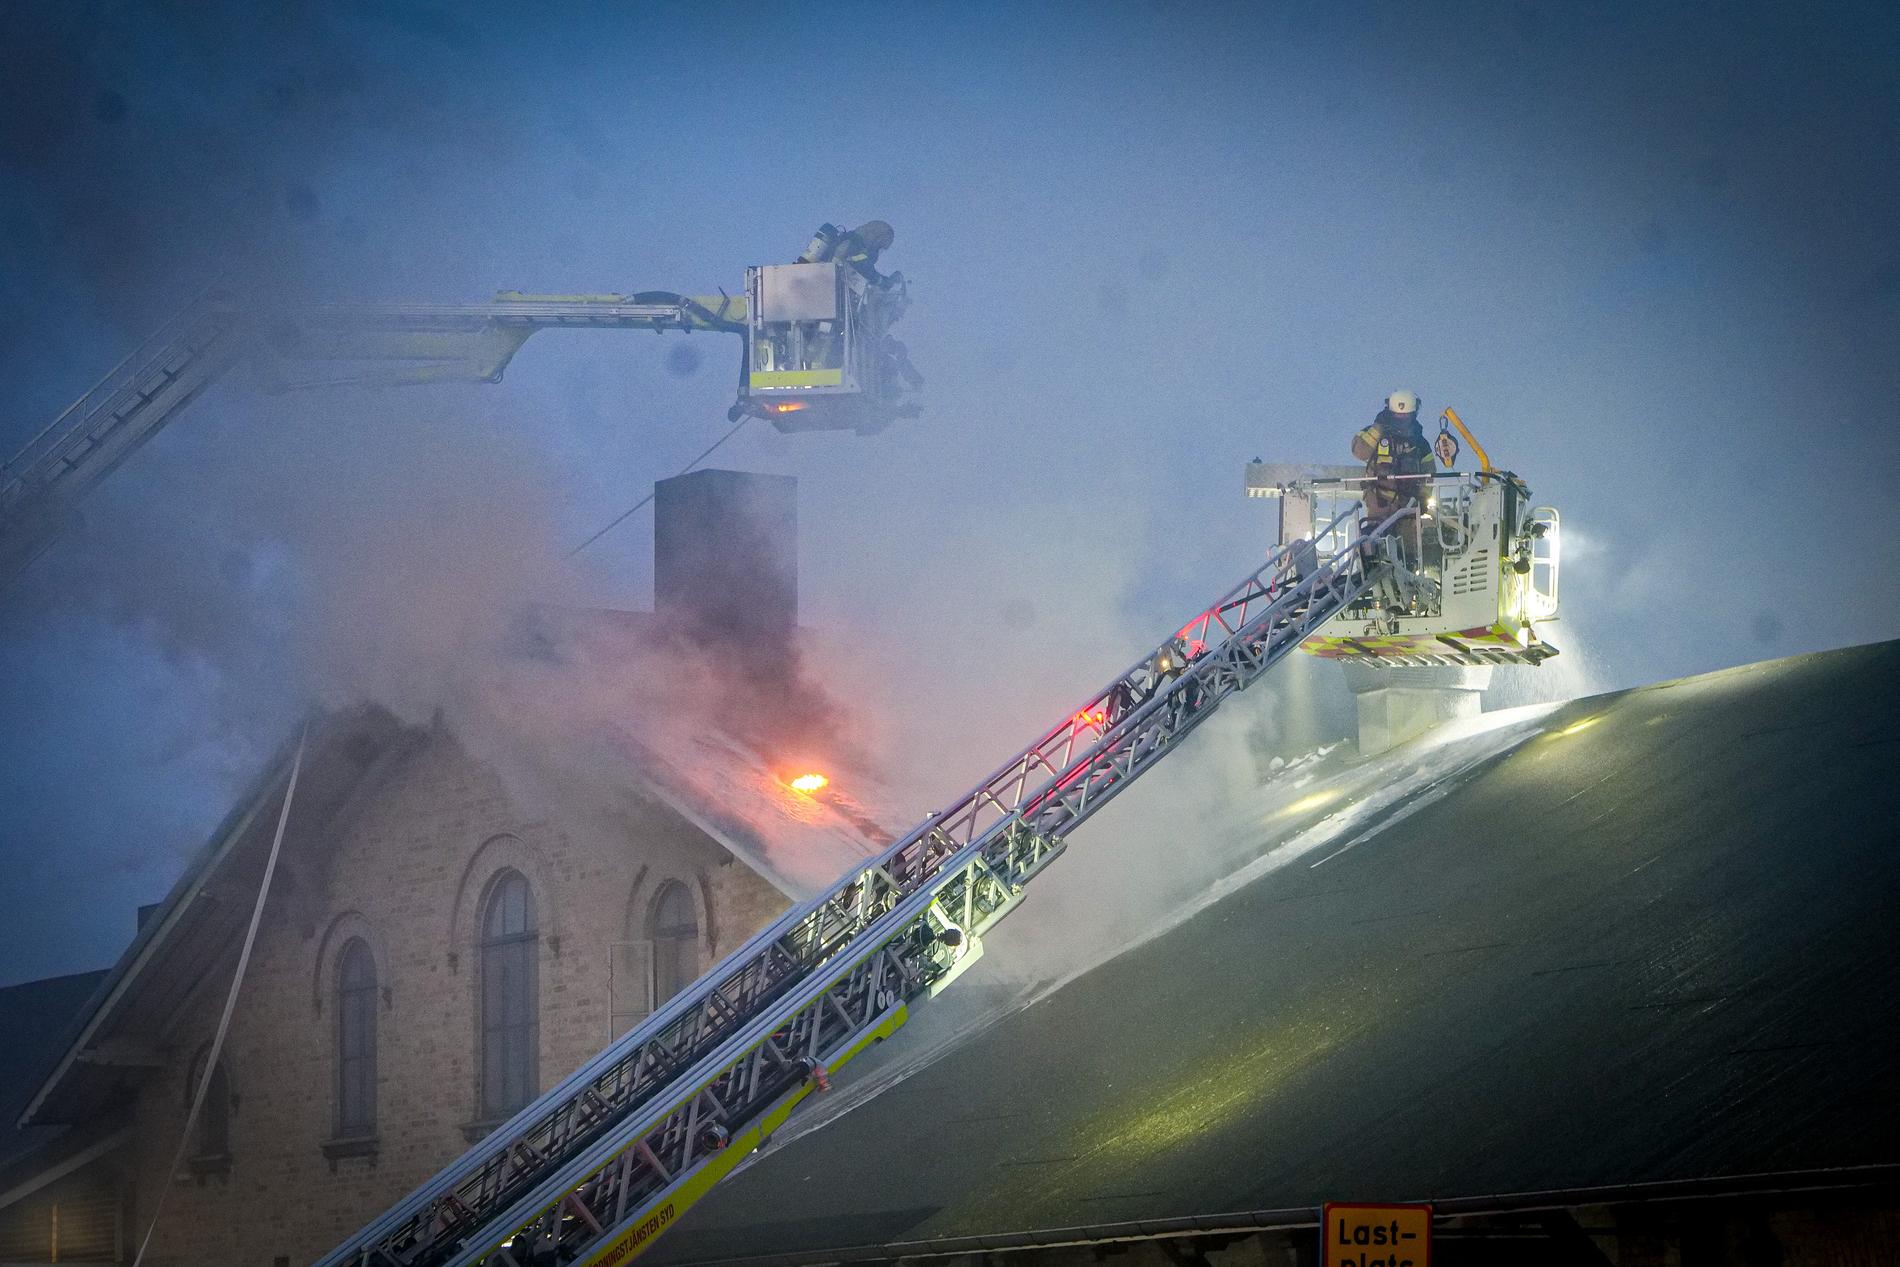 Räddningstjänsten släcker branden från luften med hävare.